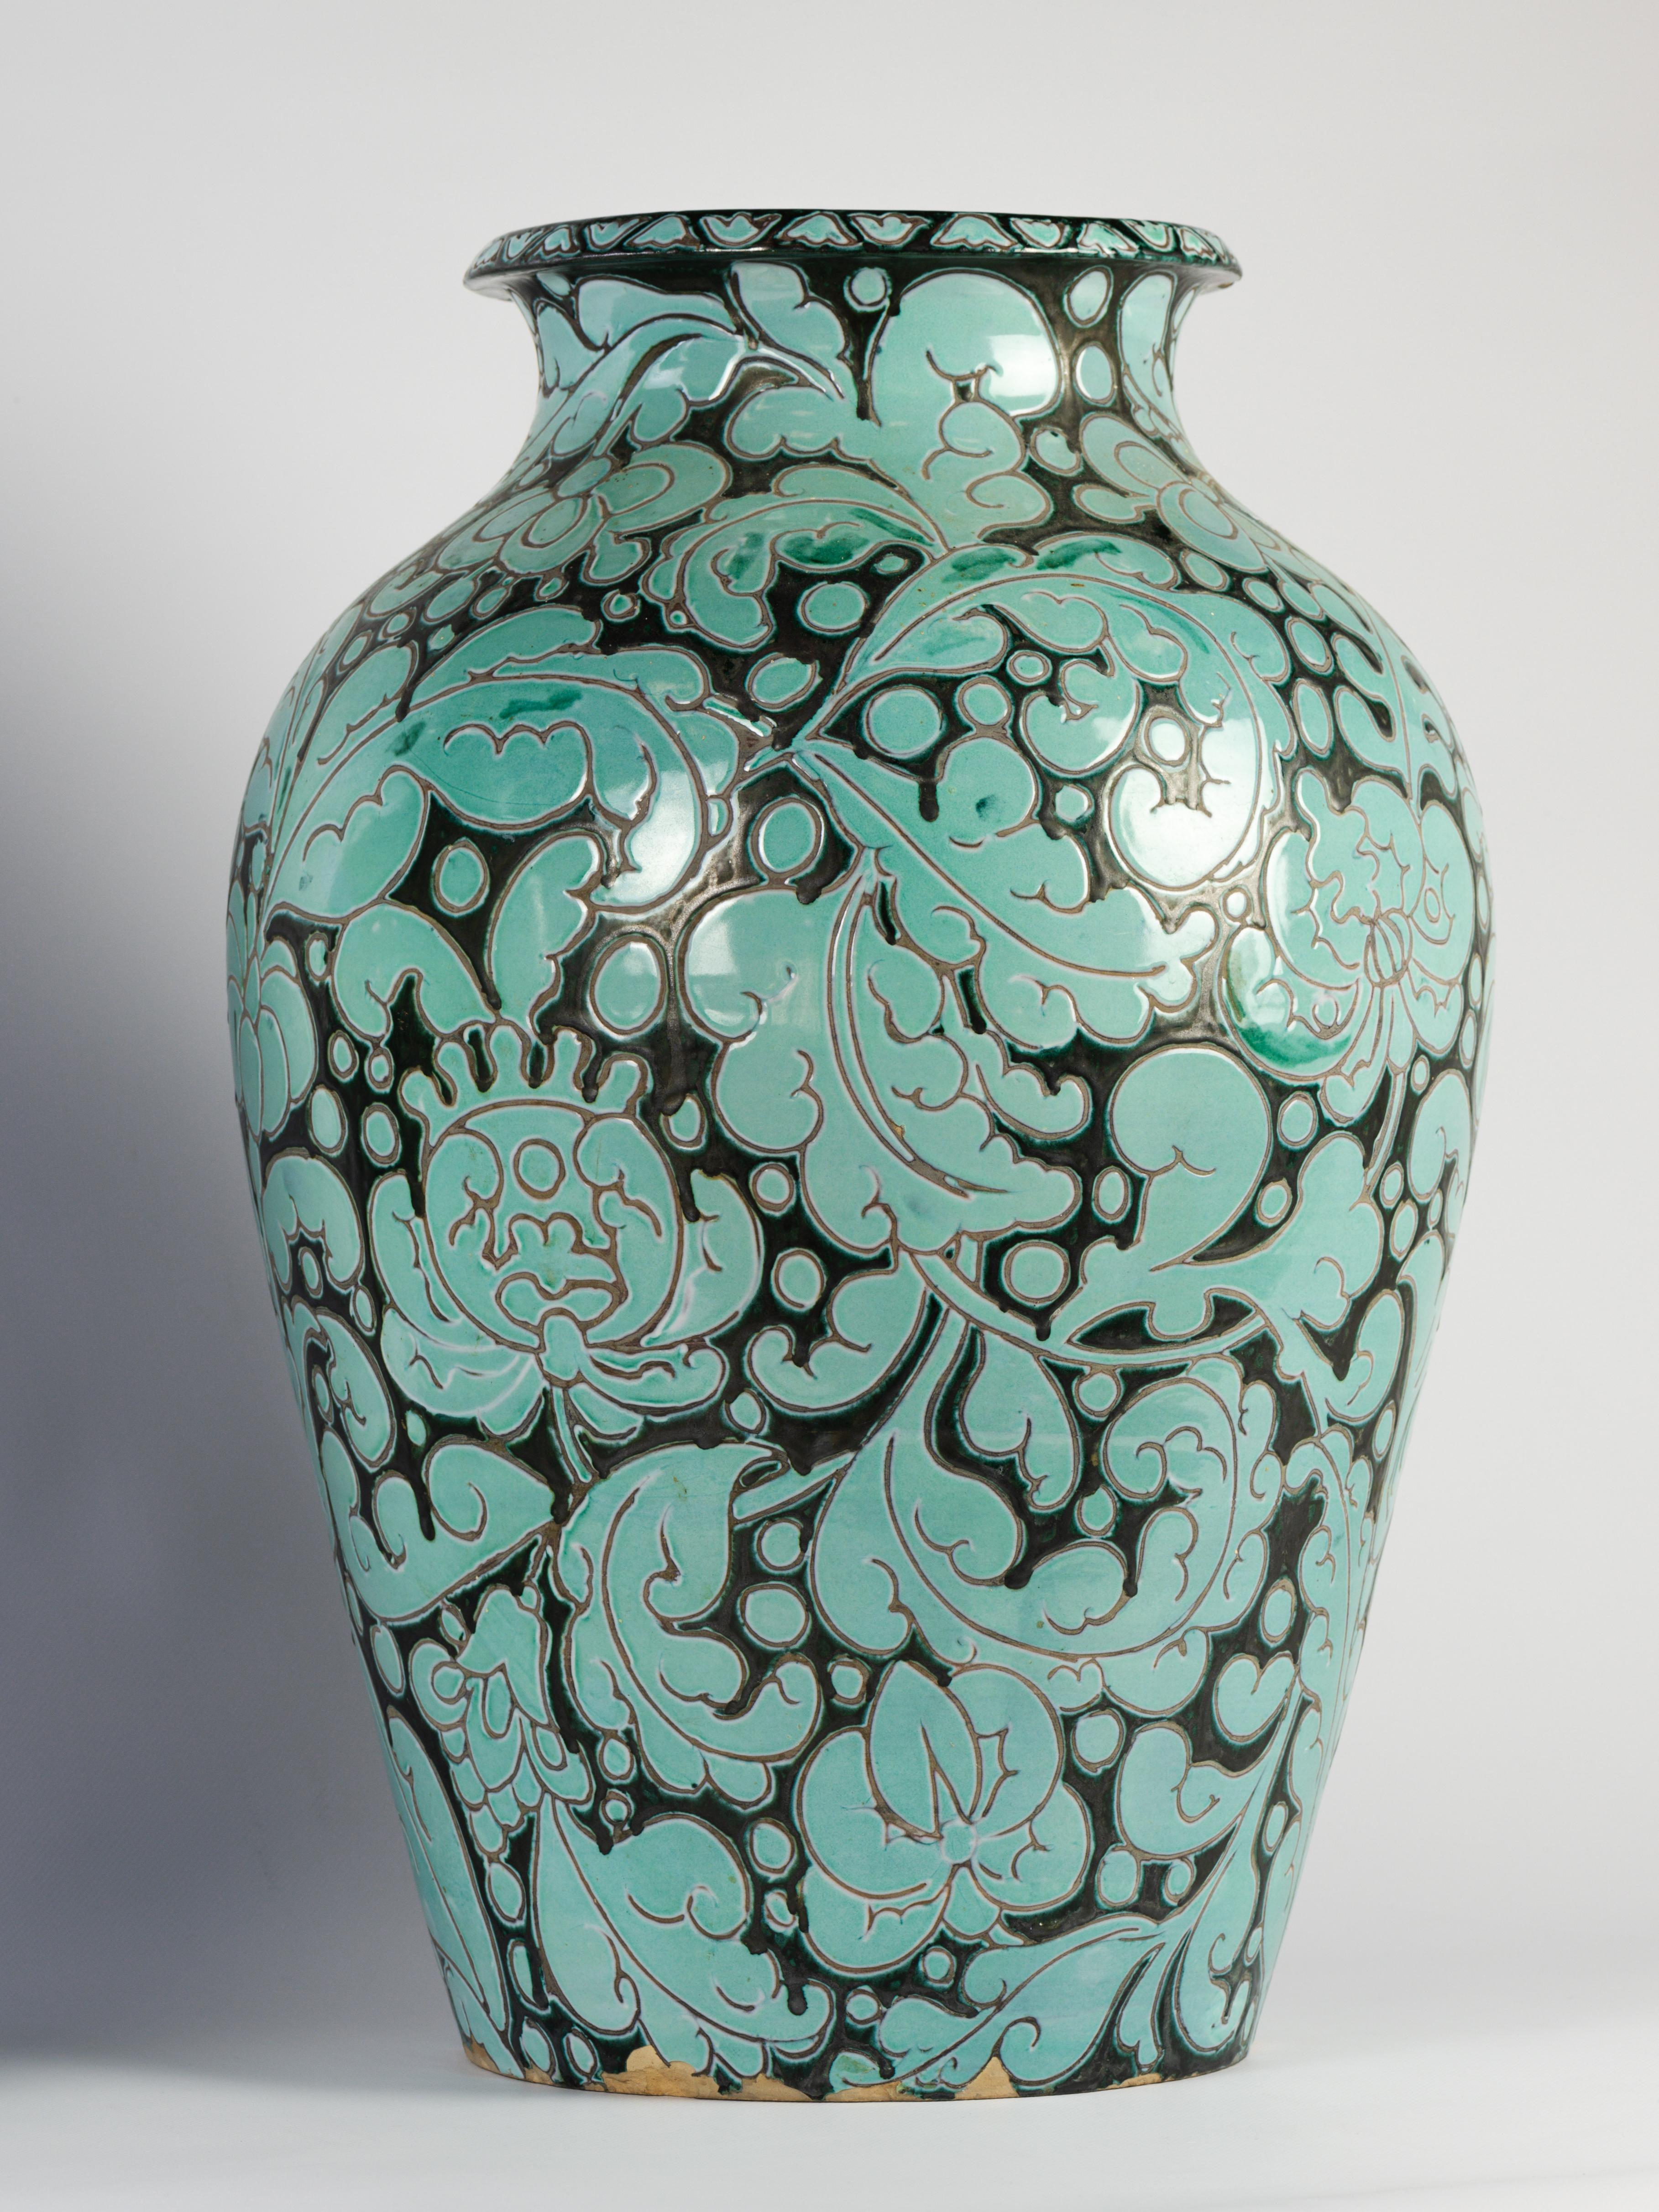 Beeindruckendes Paar blauer und schwarzer Vasen. 

Wunderschöne Emaille. 

Kleine Verluste, sehr guter Zustand. 

